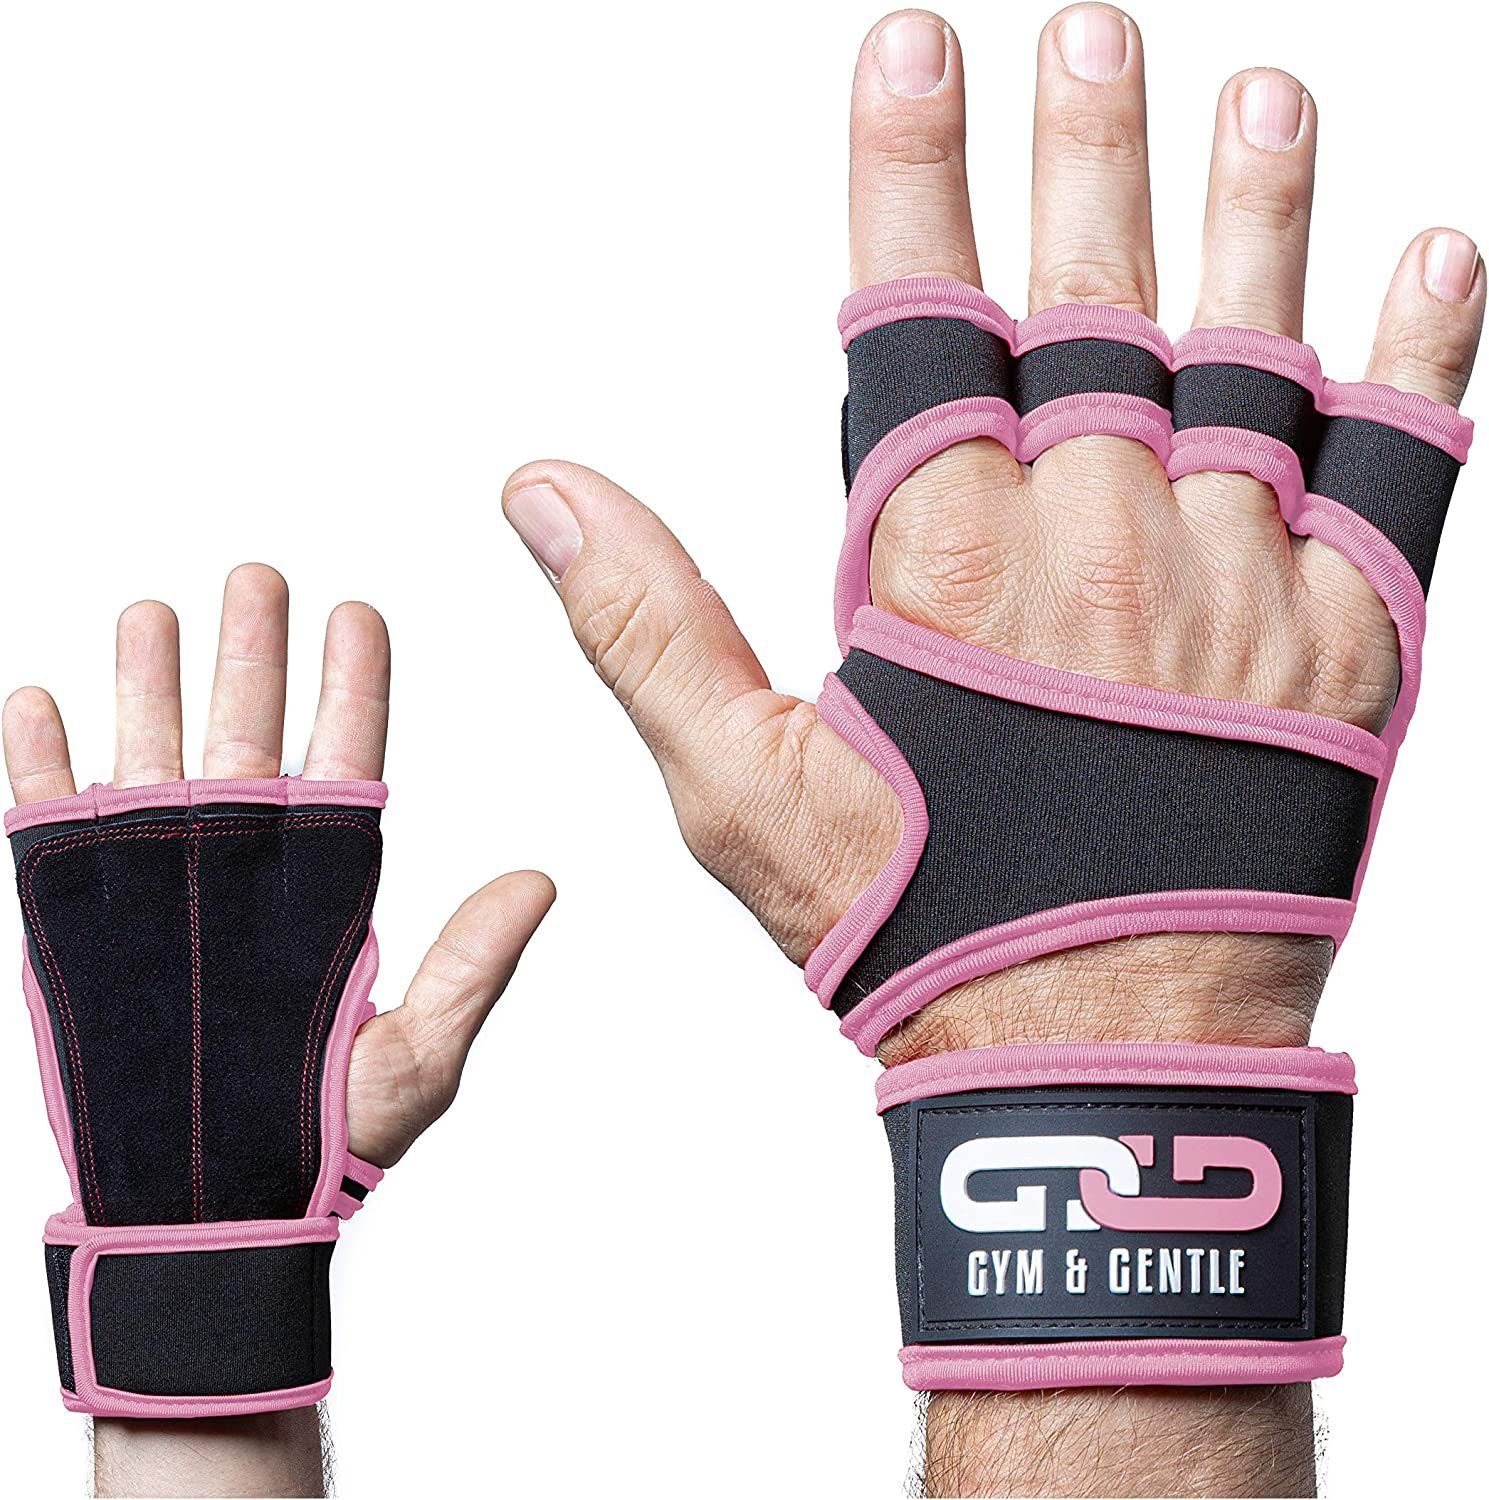 Gym & Gentle Multisporthandschuhe Fitnesshandschuhe mit Handgelenkstütze für Männer und Frauen geringes Gewicht rosa